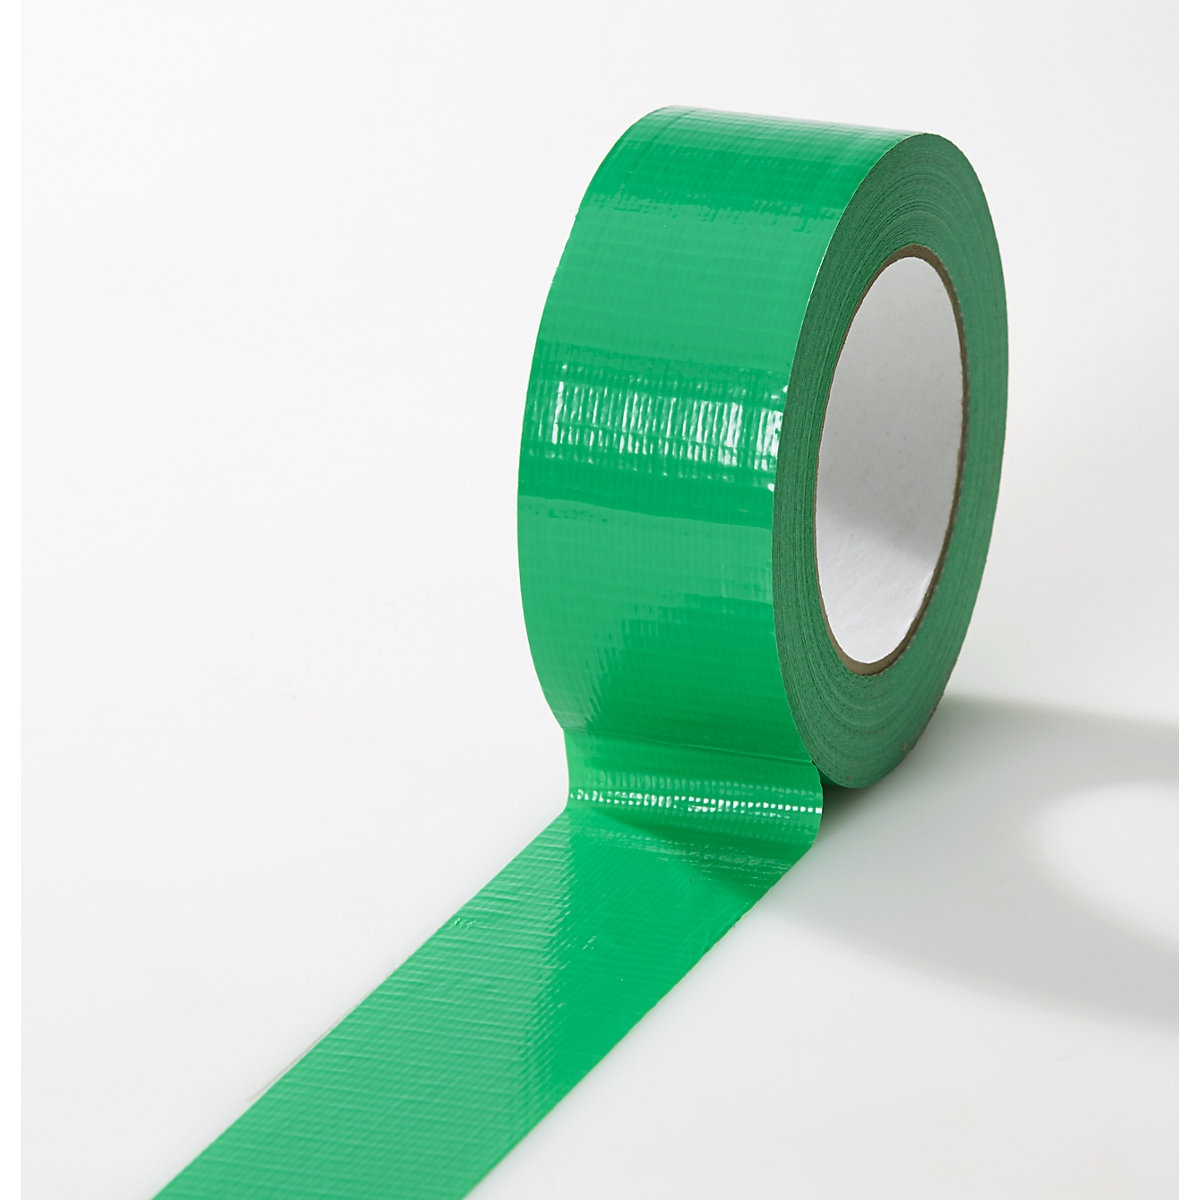 Tkaninová páska, v různých barvách, bal.j. 24 rolí, zelená, šířka pásky 38 mm-9